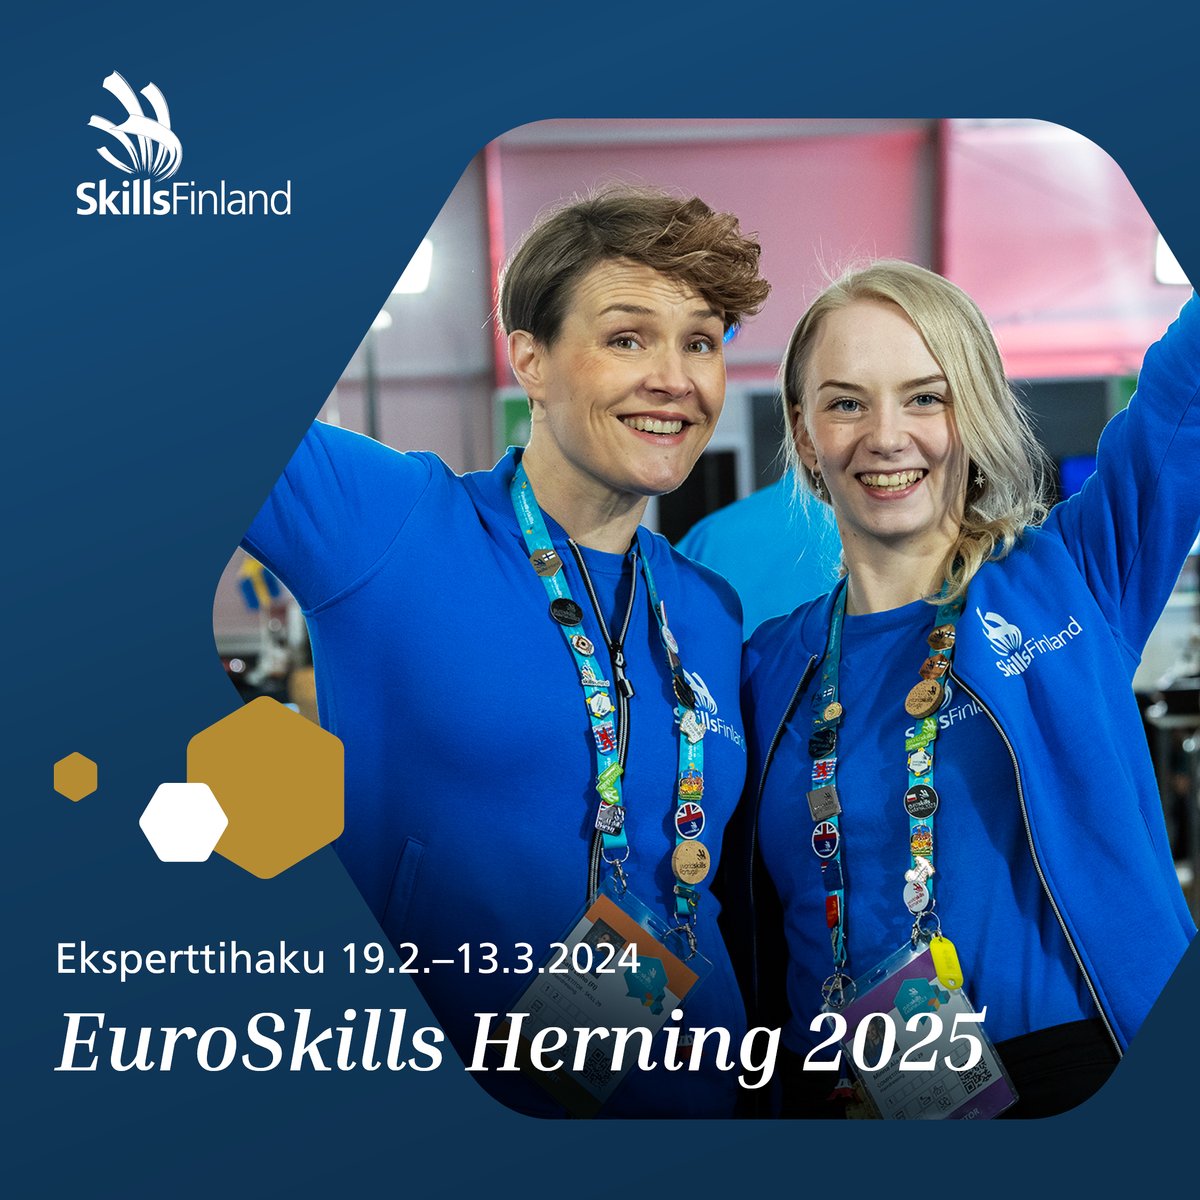 Suomen eksperttihaku EuroSkills Herning 2025 -kilpailuun on alkanut. Hae mukaan kehittämään omaa ammattitaitoasi Euroopan huippujen parissa! Lisätietoa: skillsfinland.fi/ajankohtaista/…